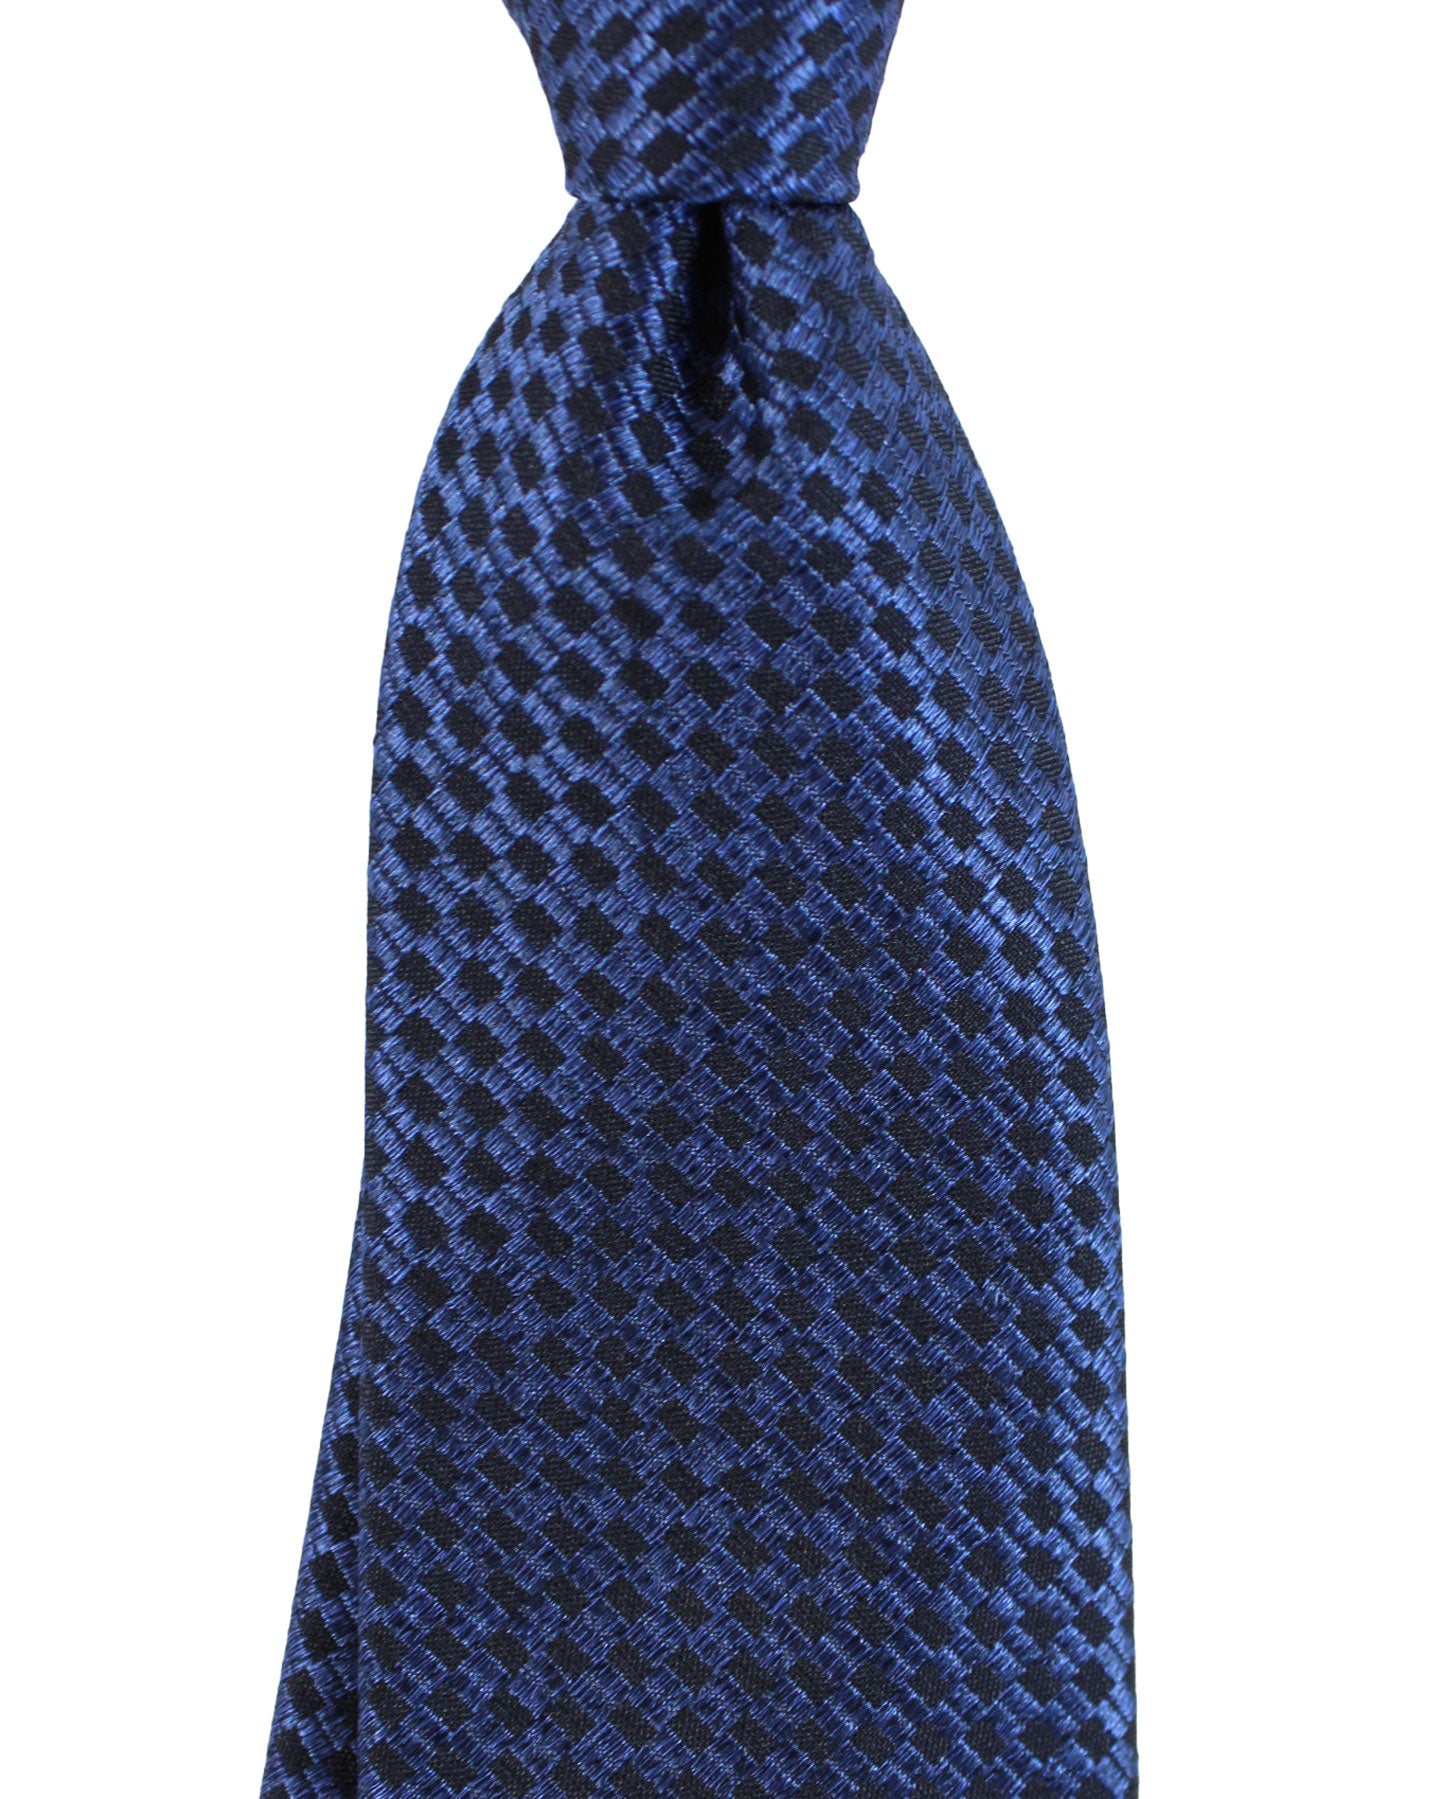 Canali Silk Tie Black Dark Blue Geometric Pattern